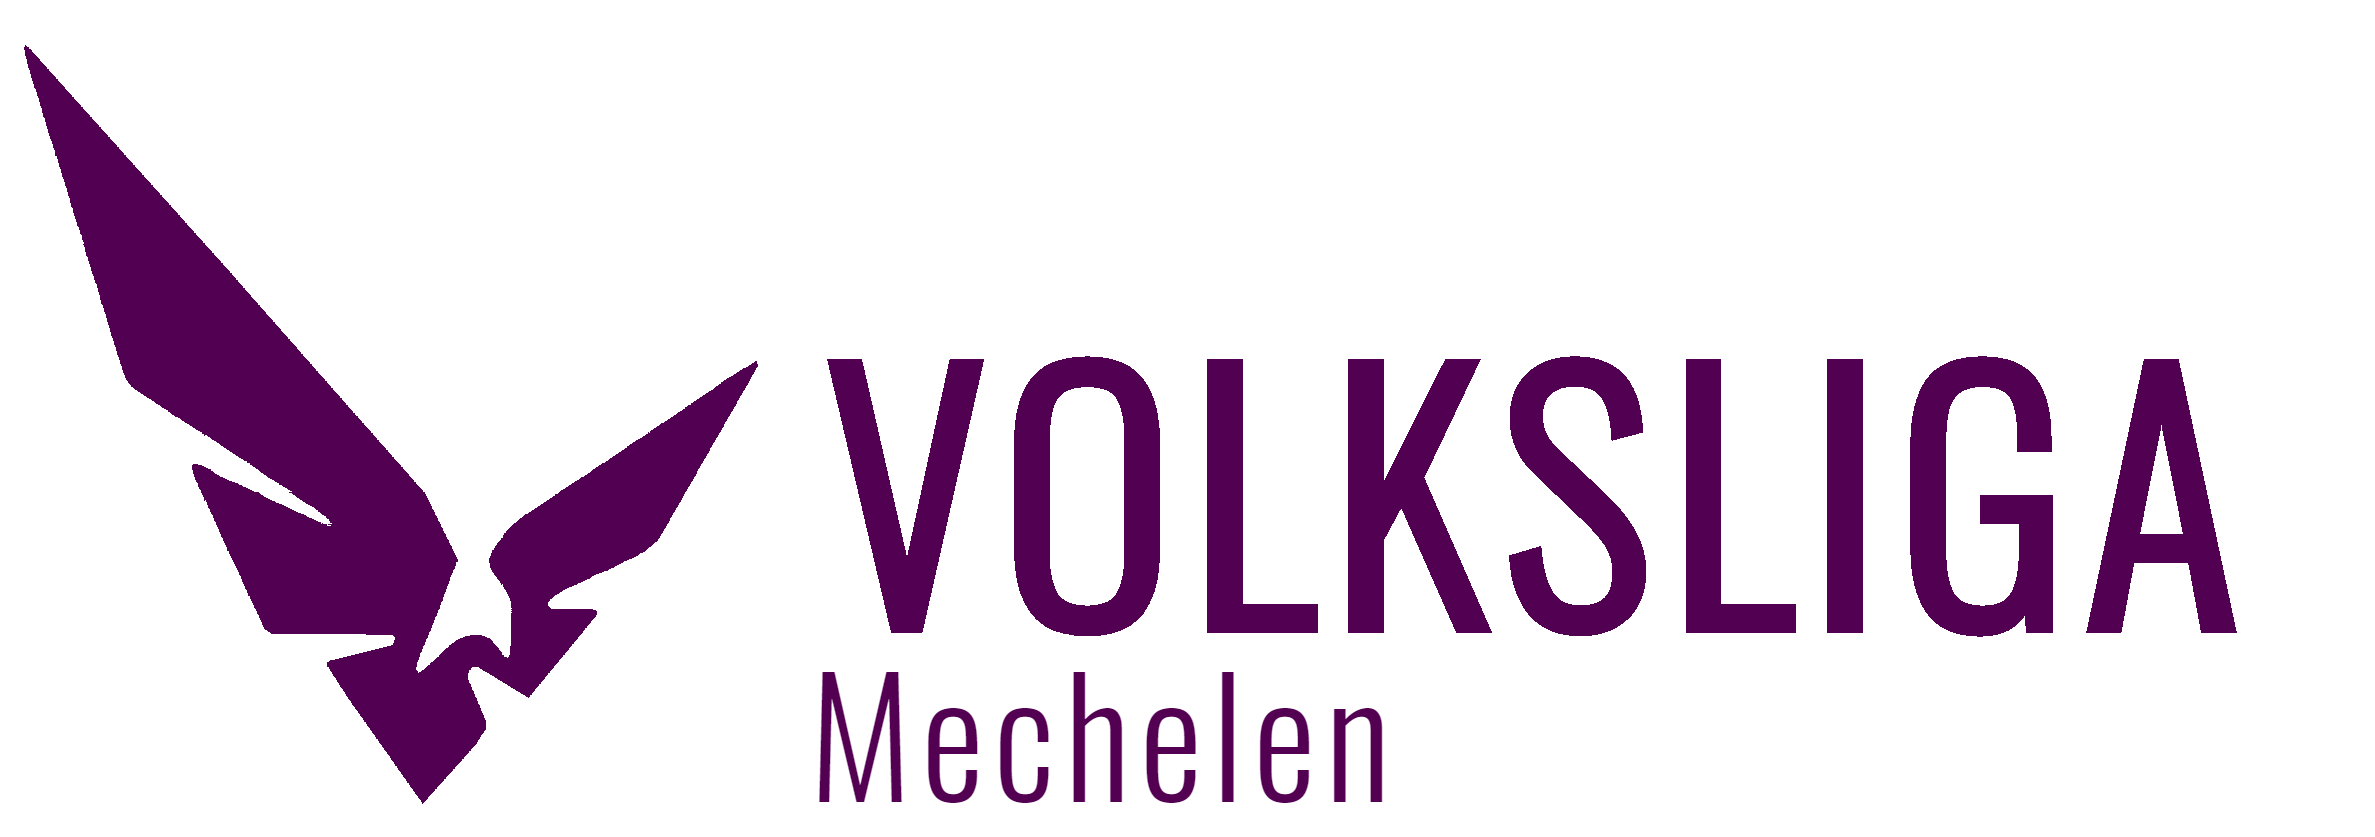 VolksLiga Mechelen